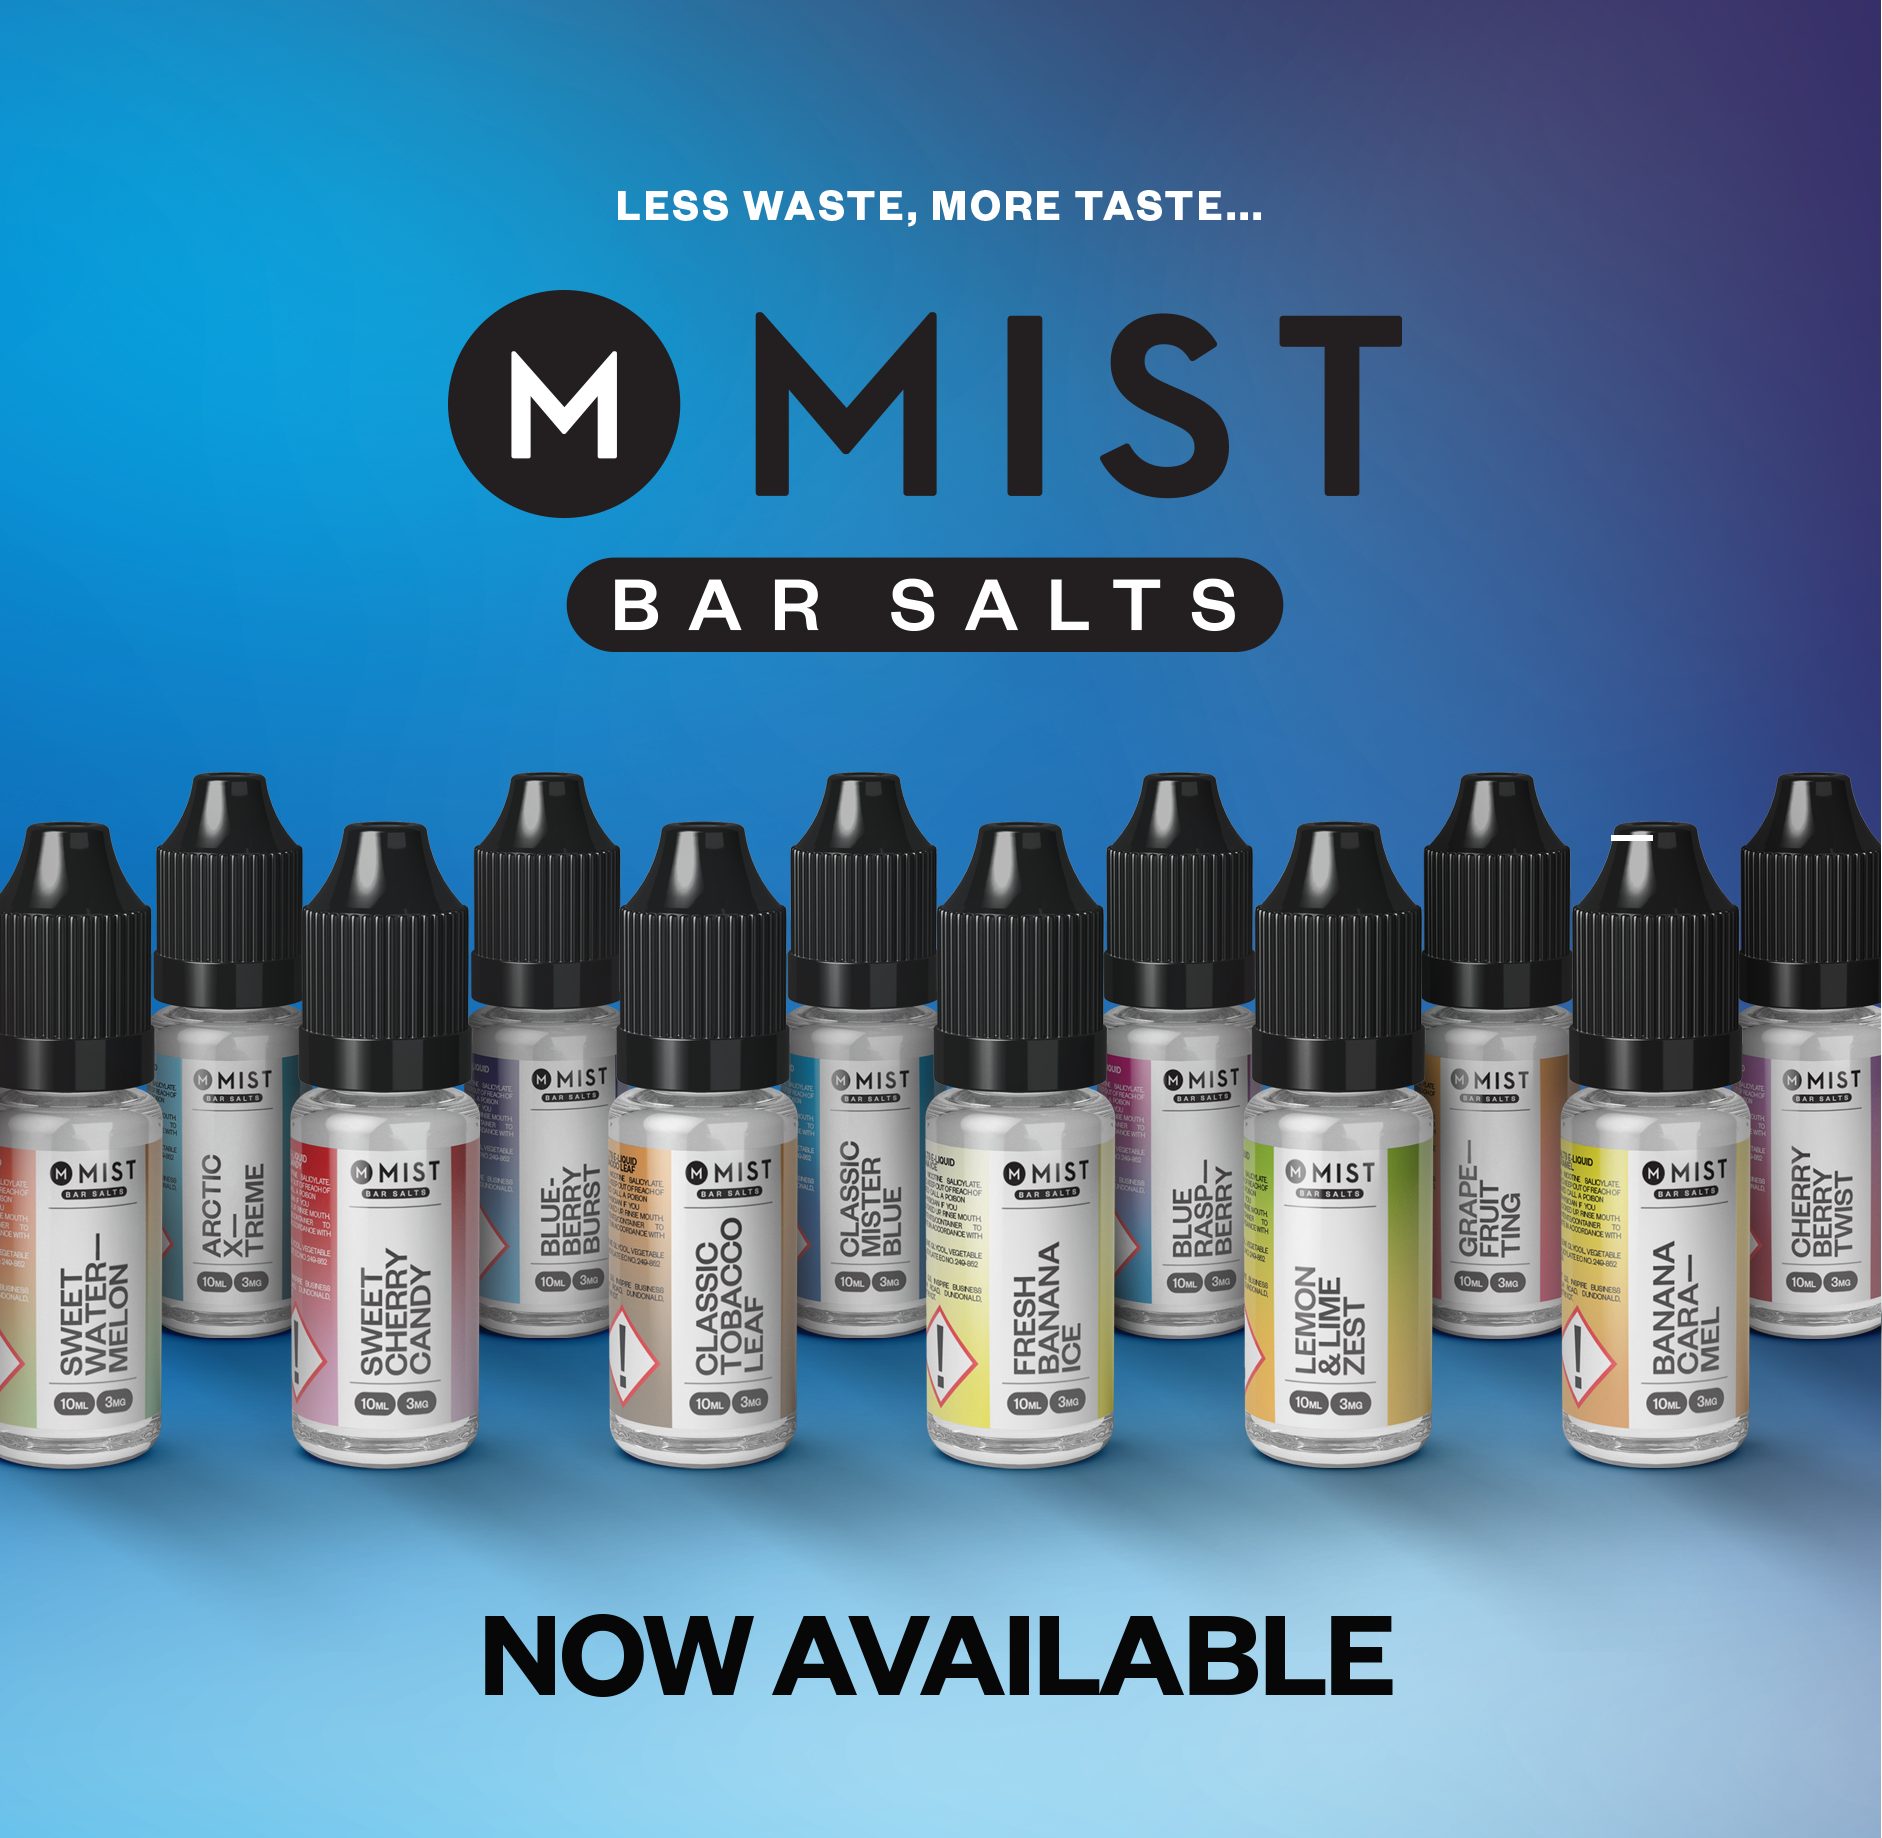 MIST Bar Salts Launched!